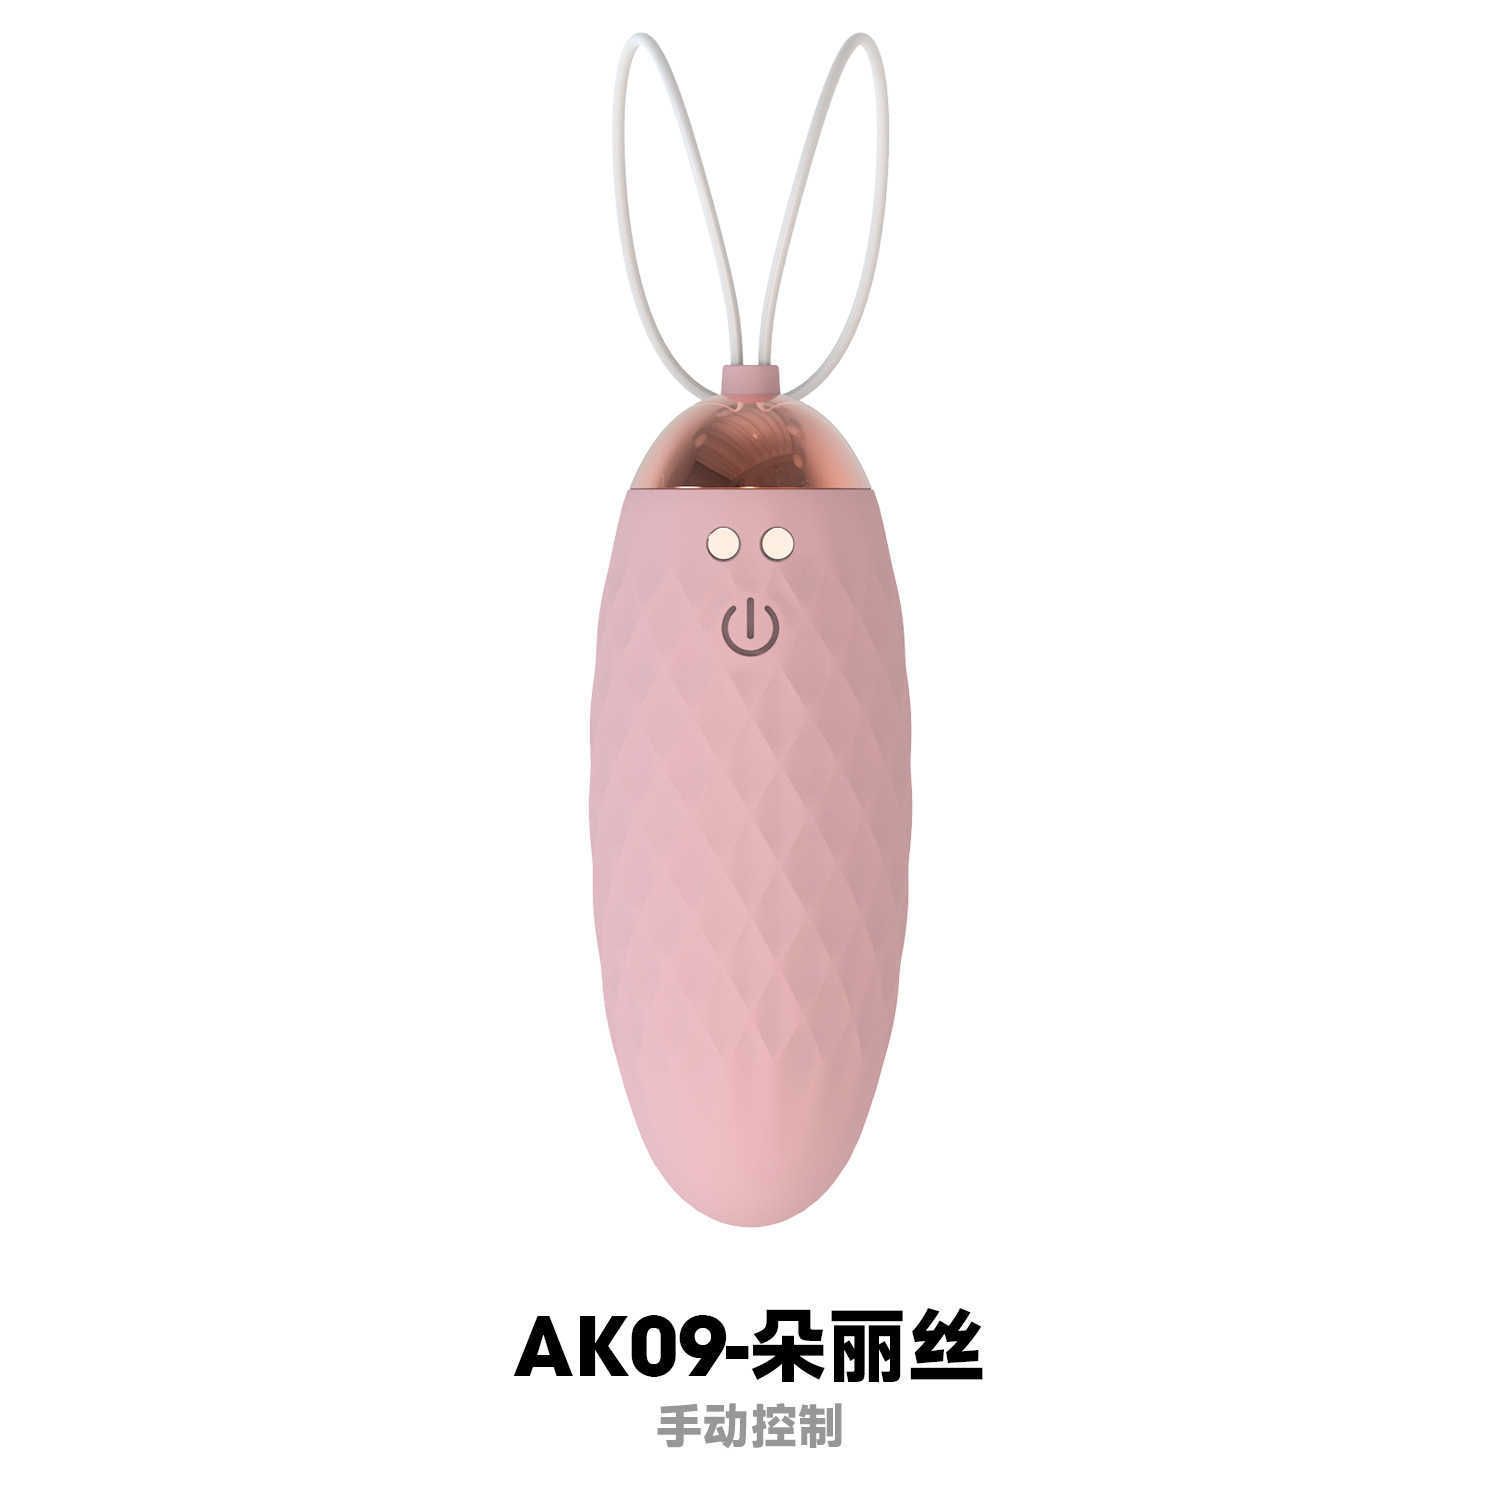 AK09 Ręczne sterowanie Diamond Pink